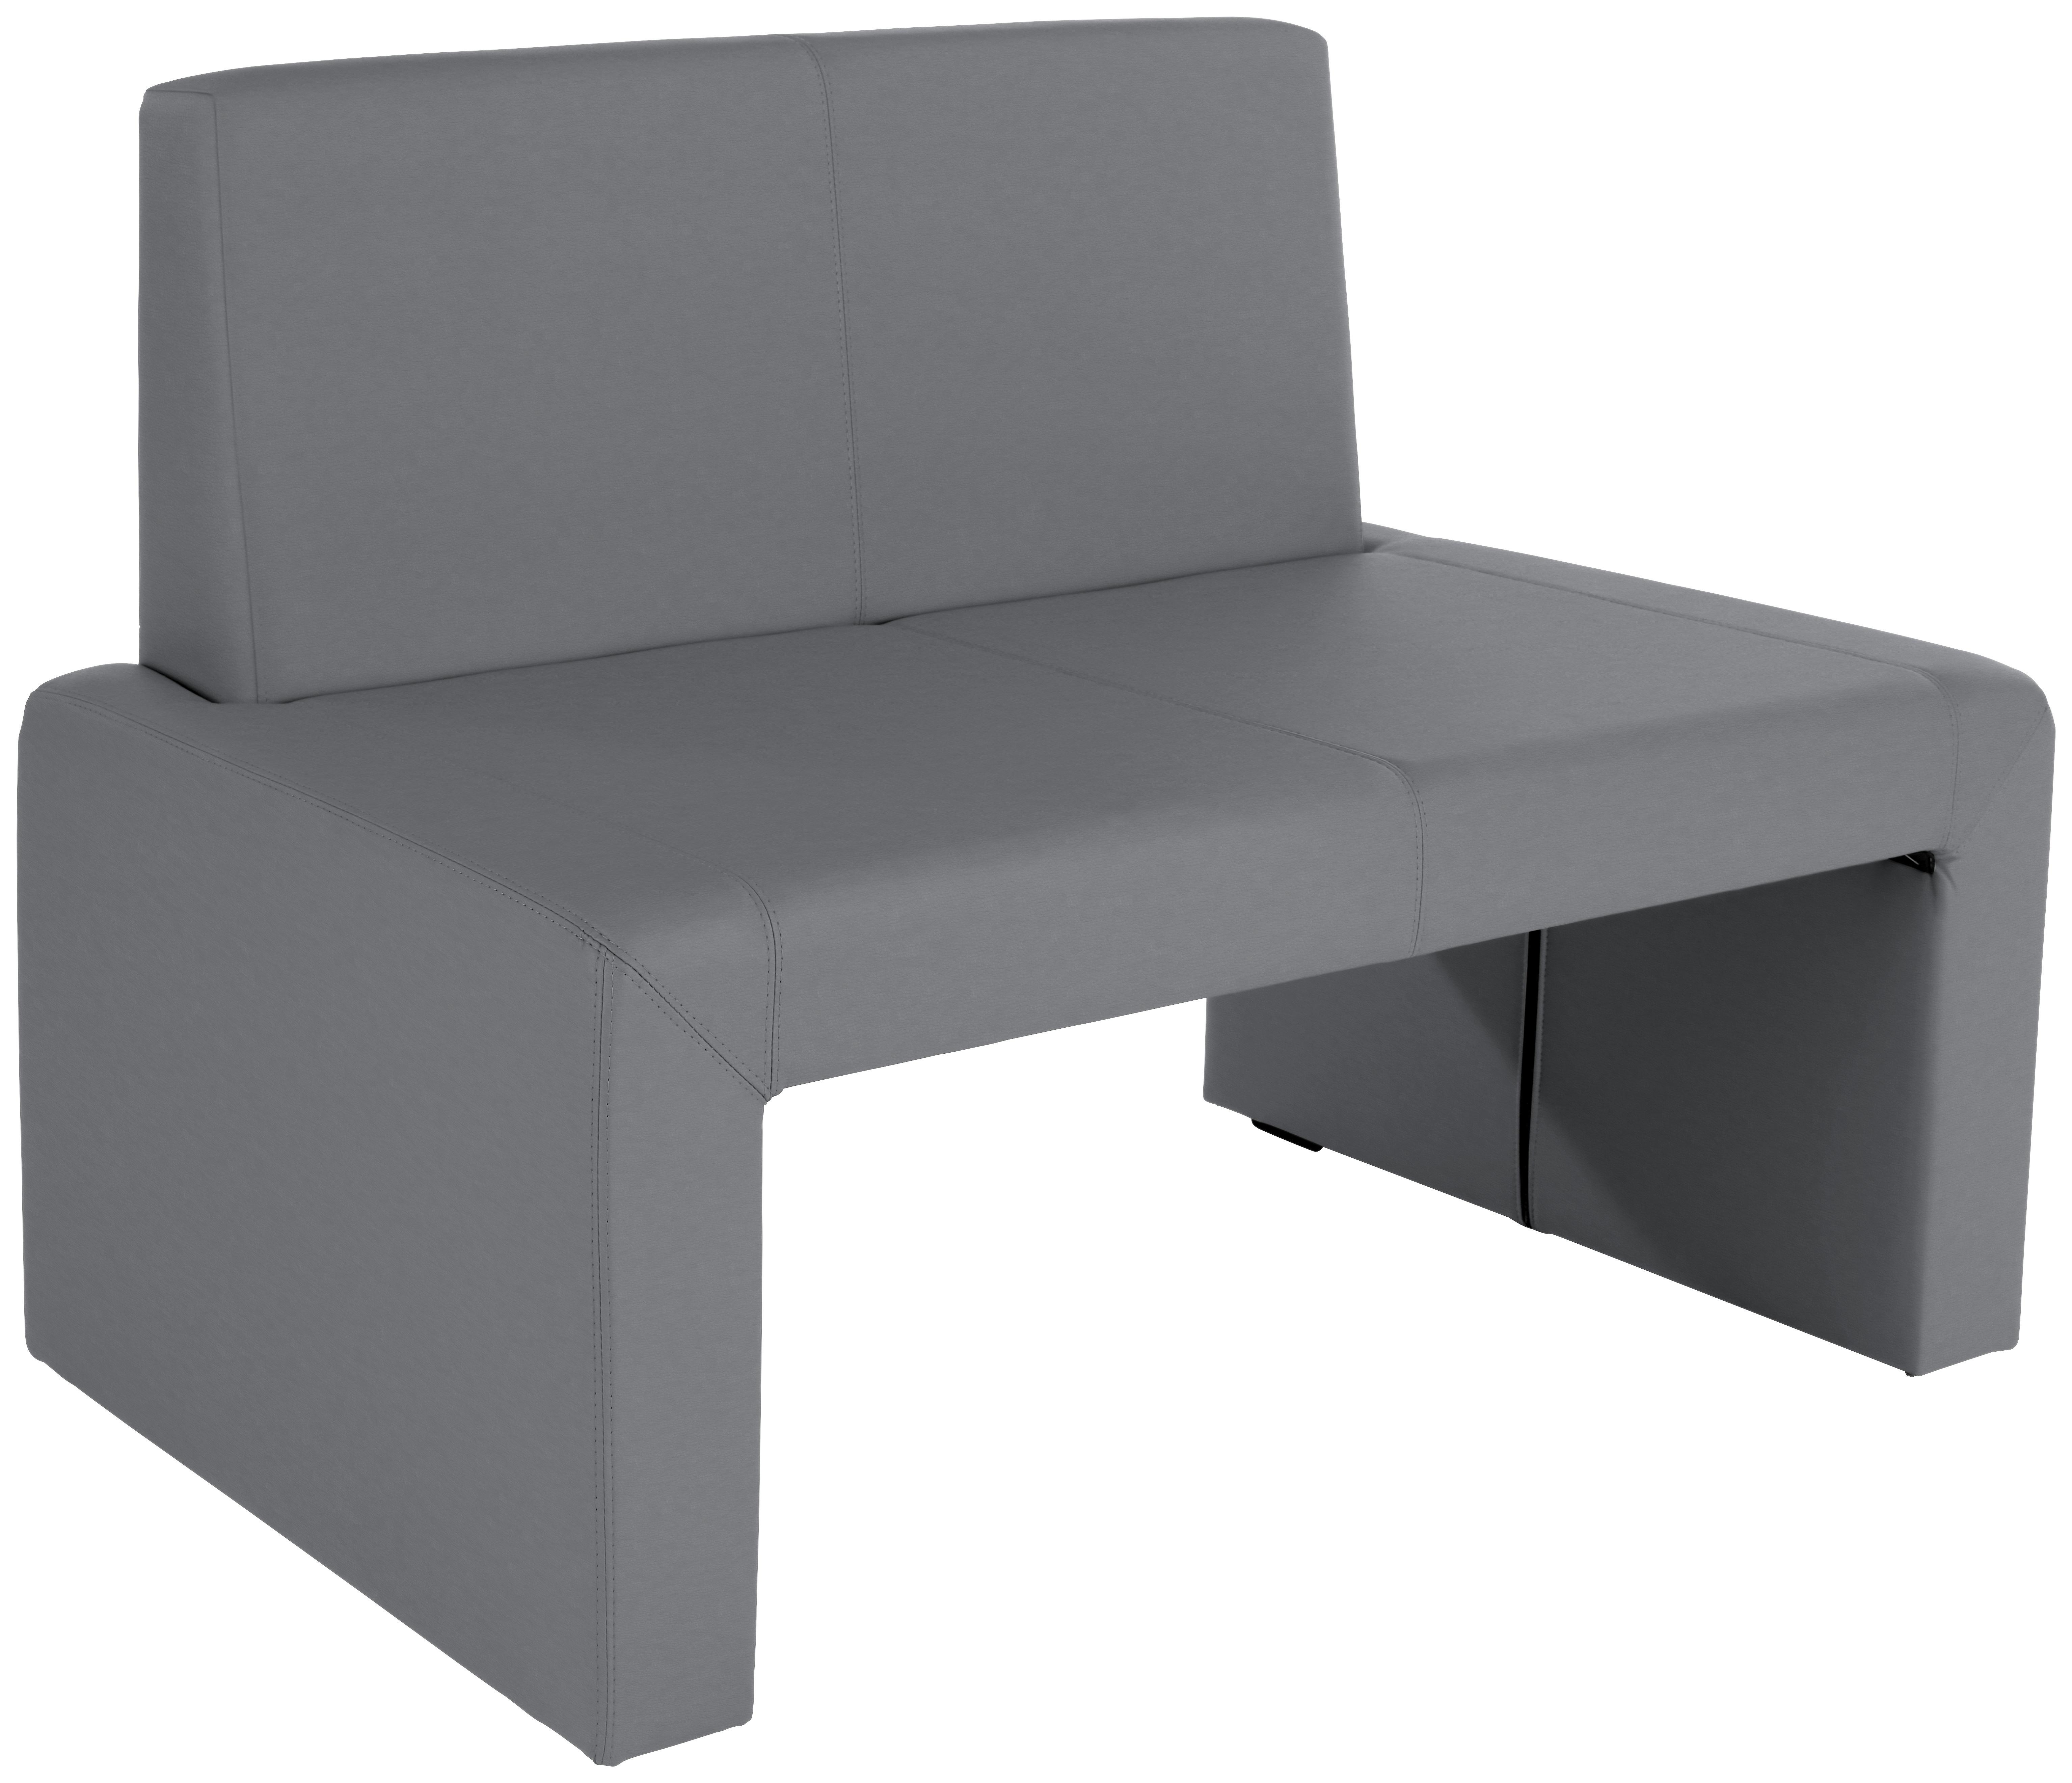 Sitzbank mit Lehne Gepolstert Grau Valun II B: 120 cm - Grau, KONVENTIONELL, Holz/Holzwerkstoff (120/88/48cm)